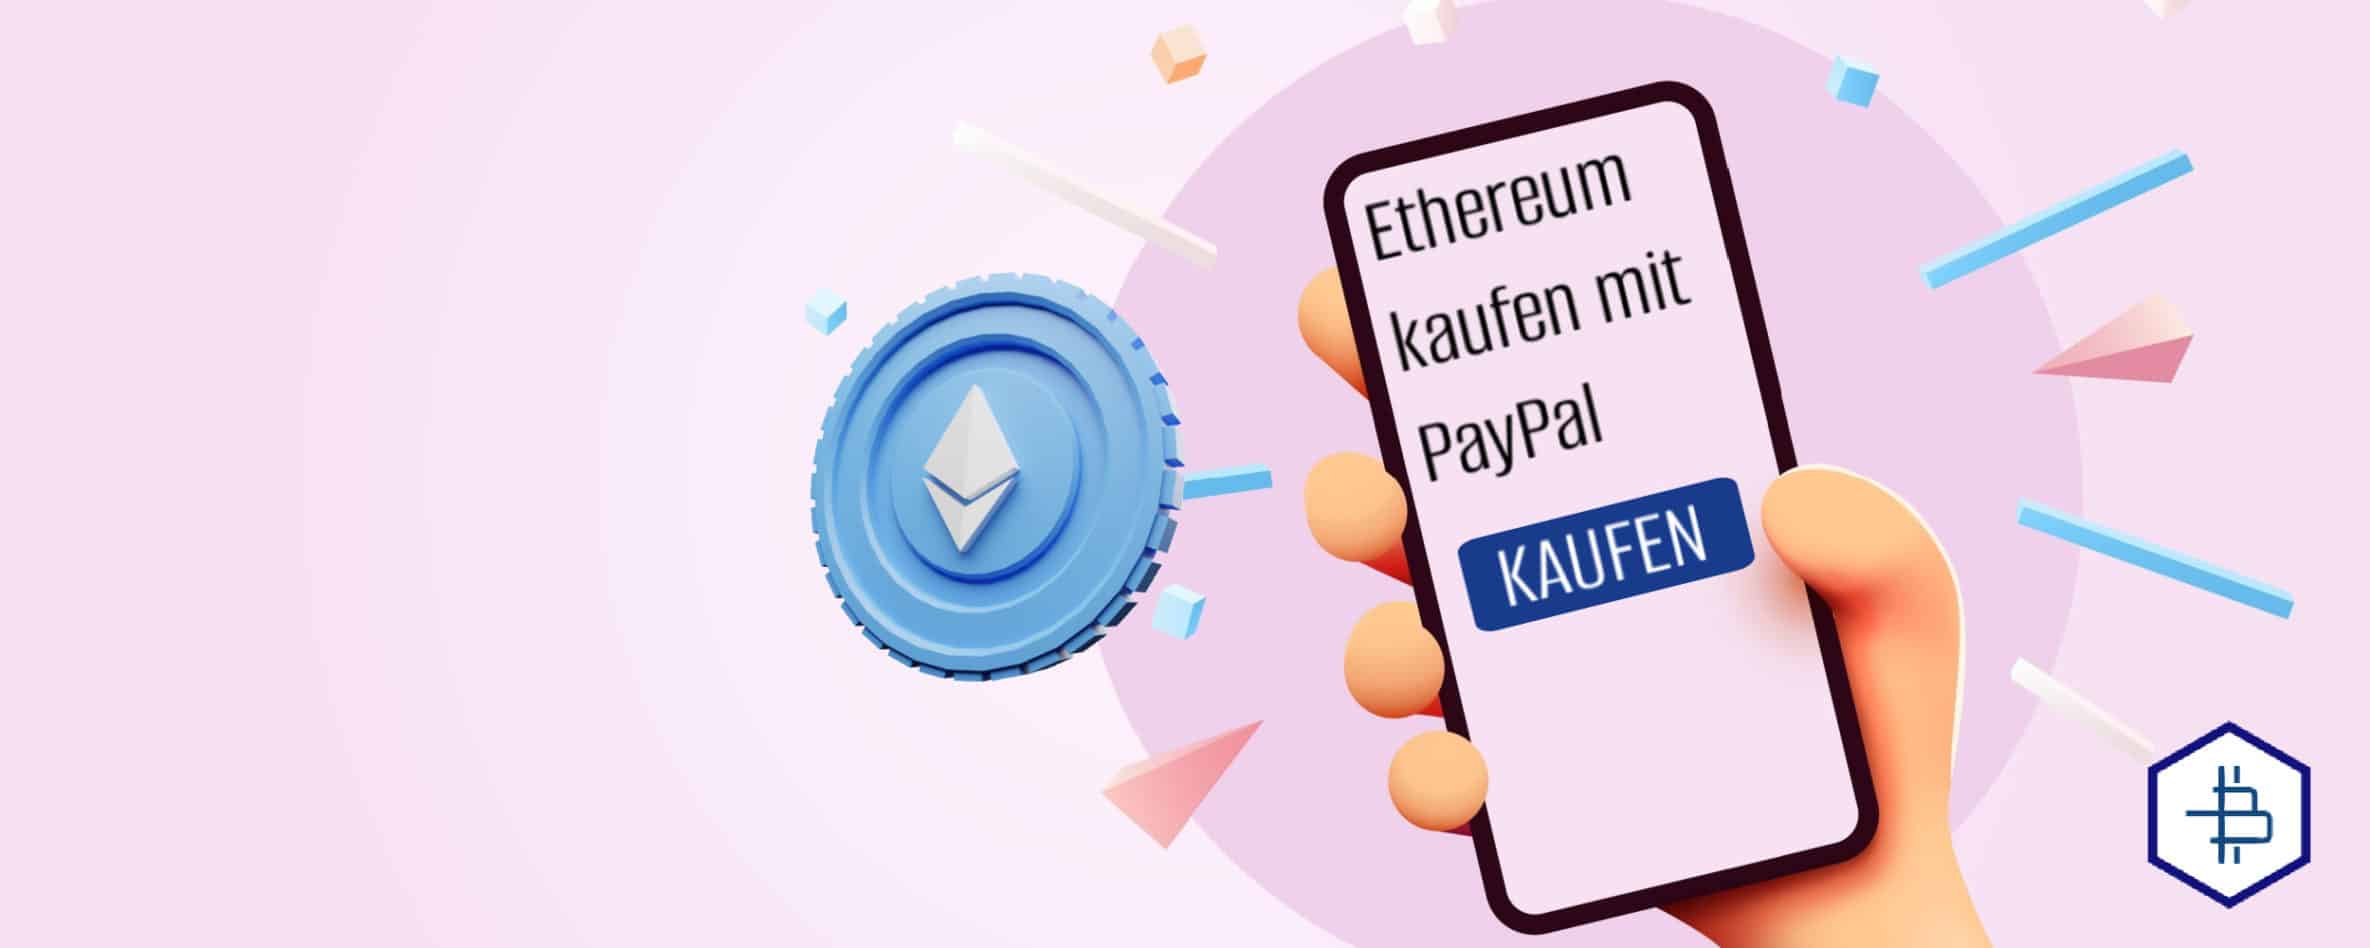 Ethereum kaufen PayPal